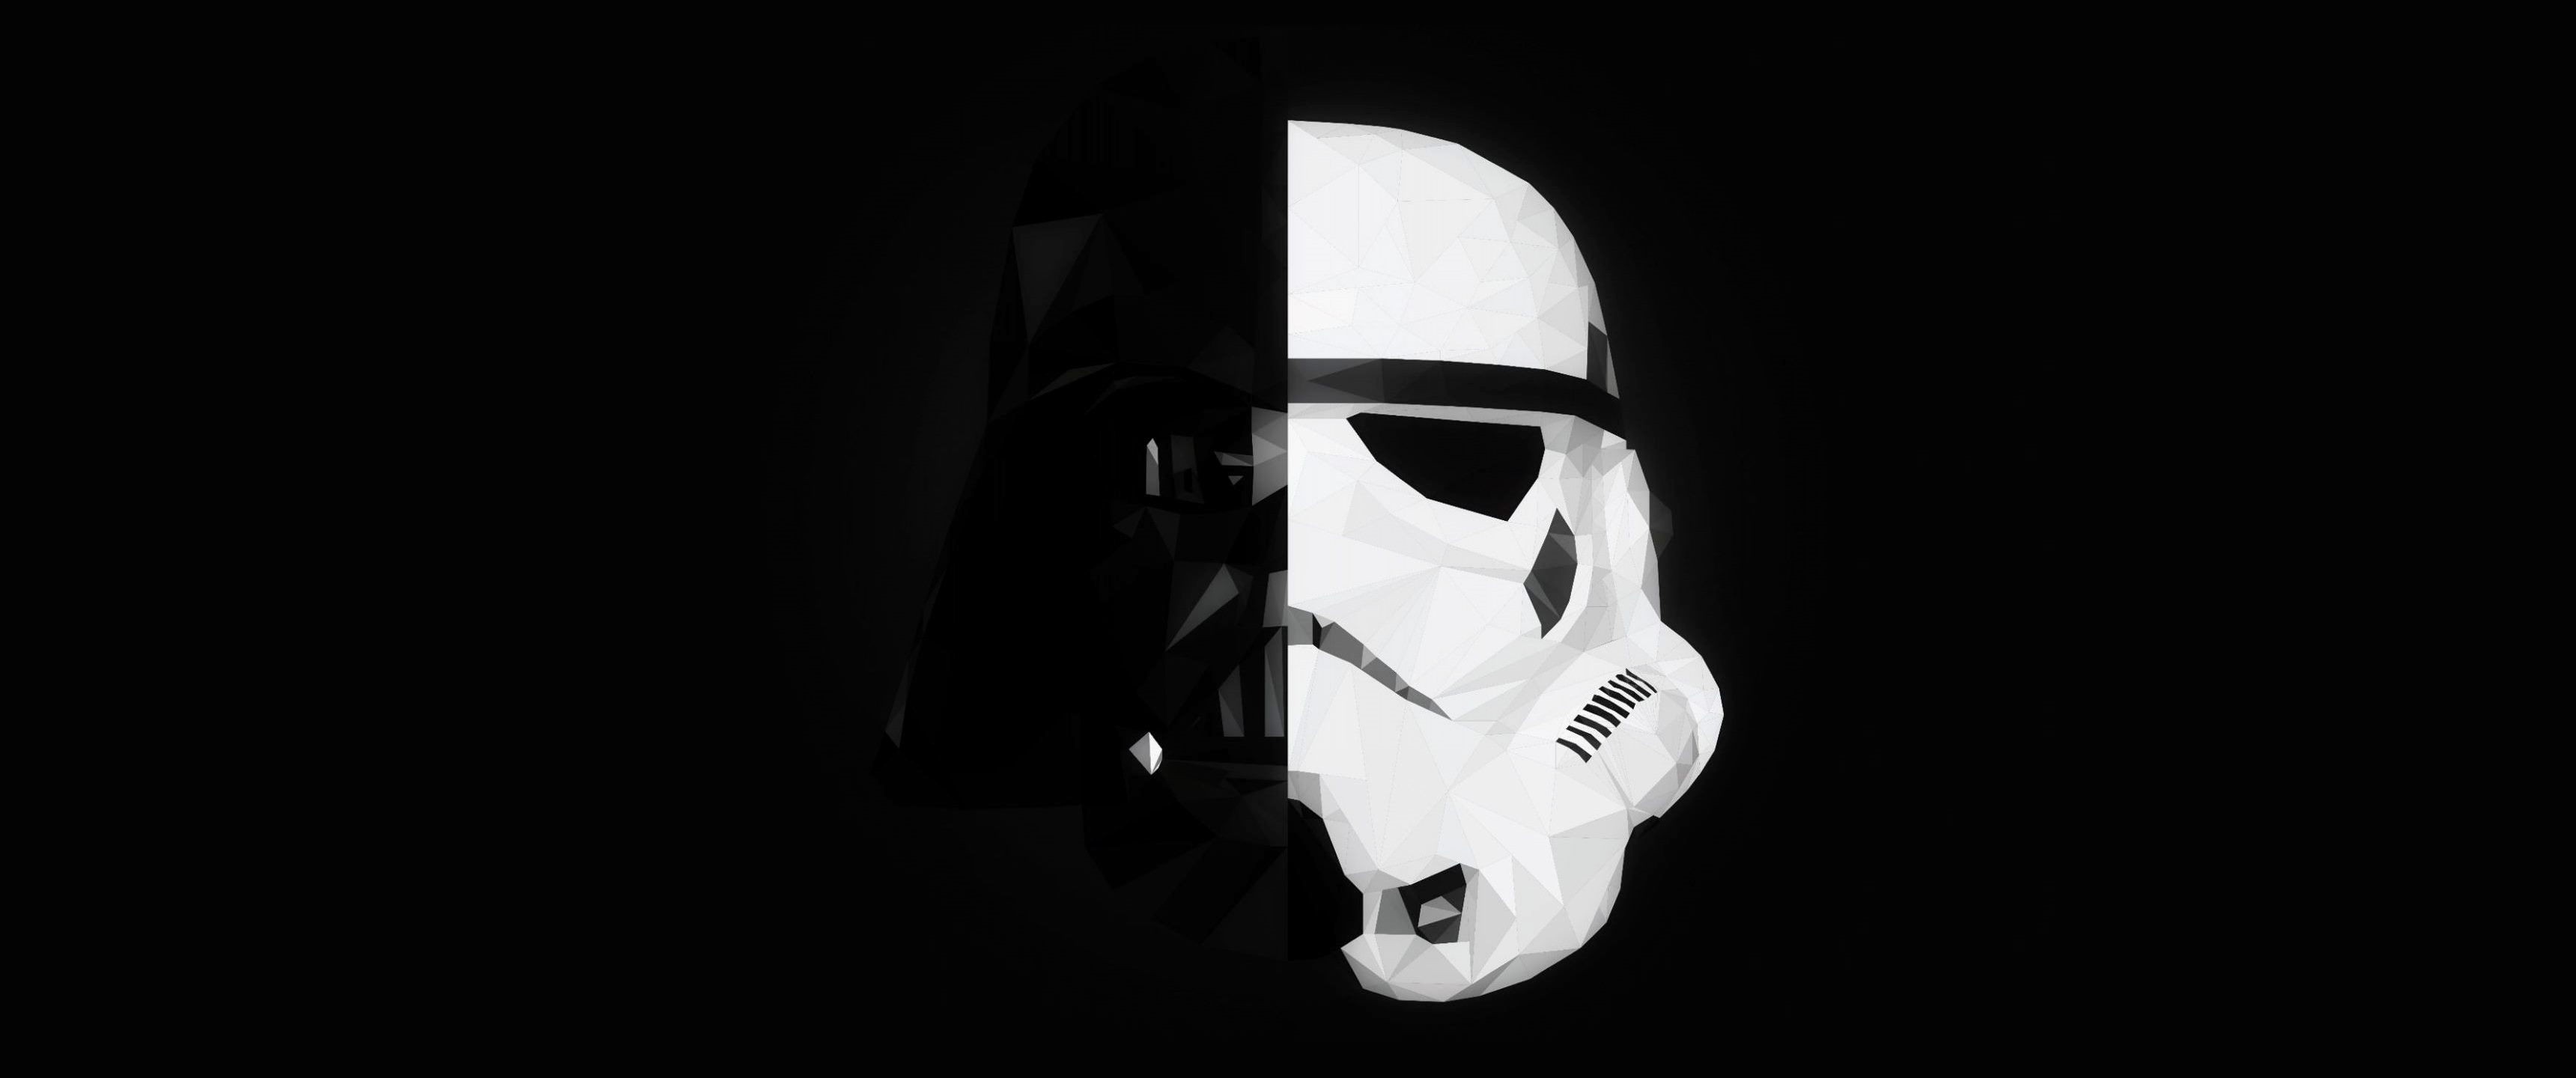 Star Wars Stormtrooper Darth Vader Mask Splitting Minimalism 3440x1440